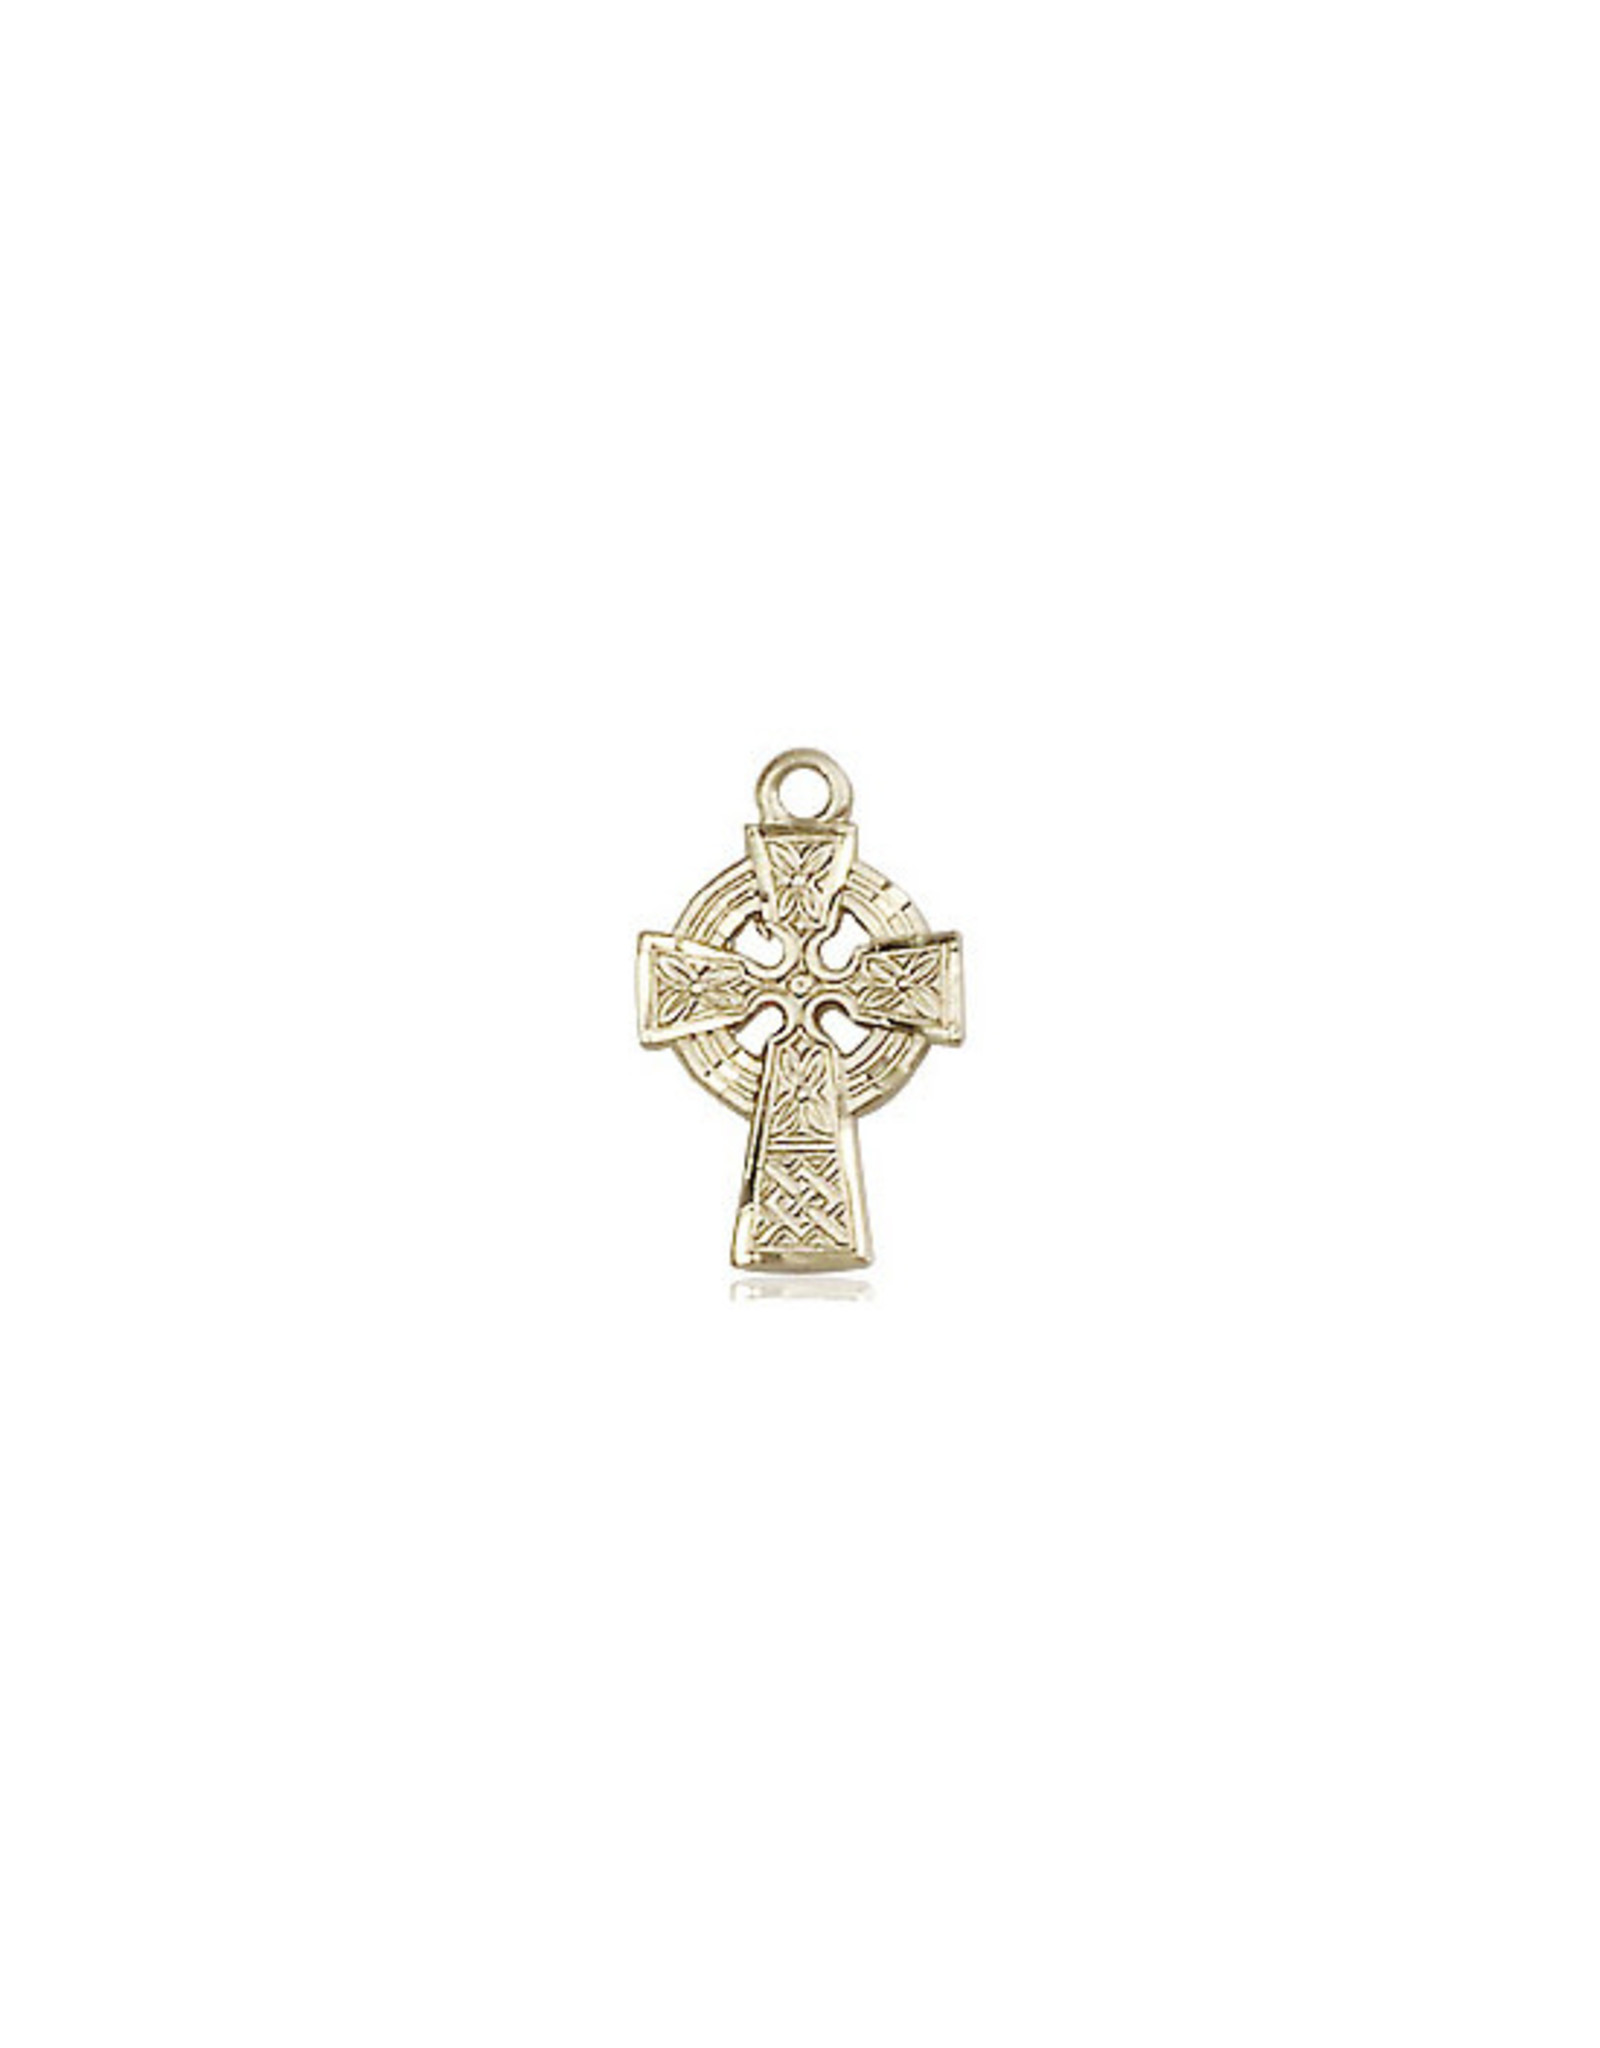 Bliss Medal - Celtic Cross, Gold Filled